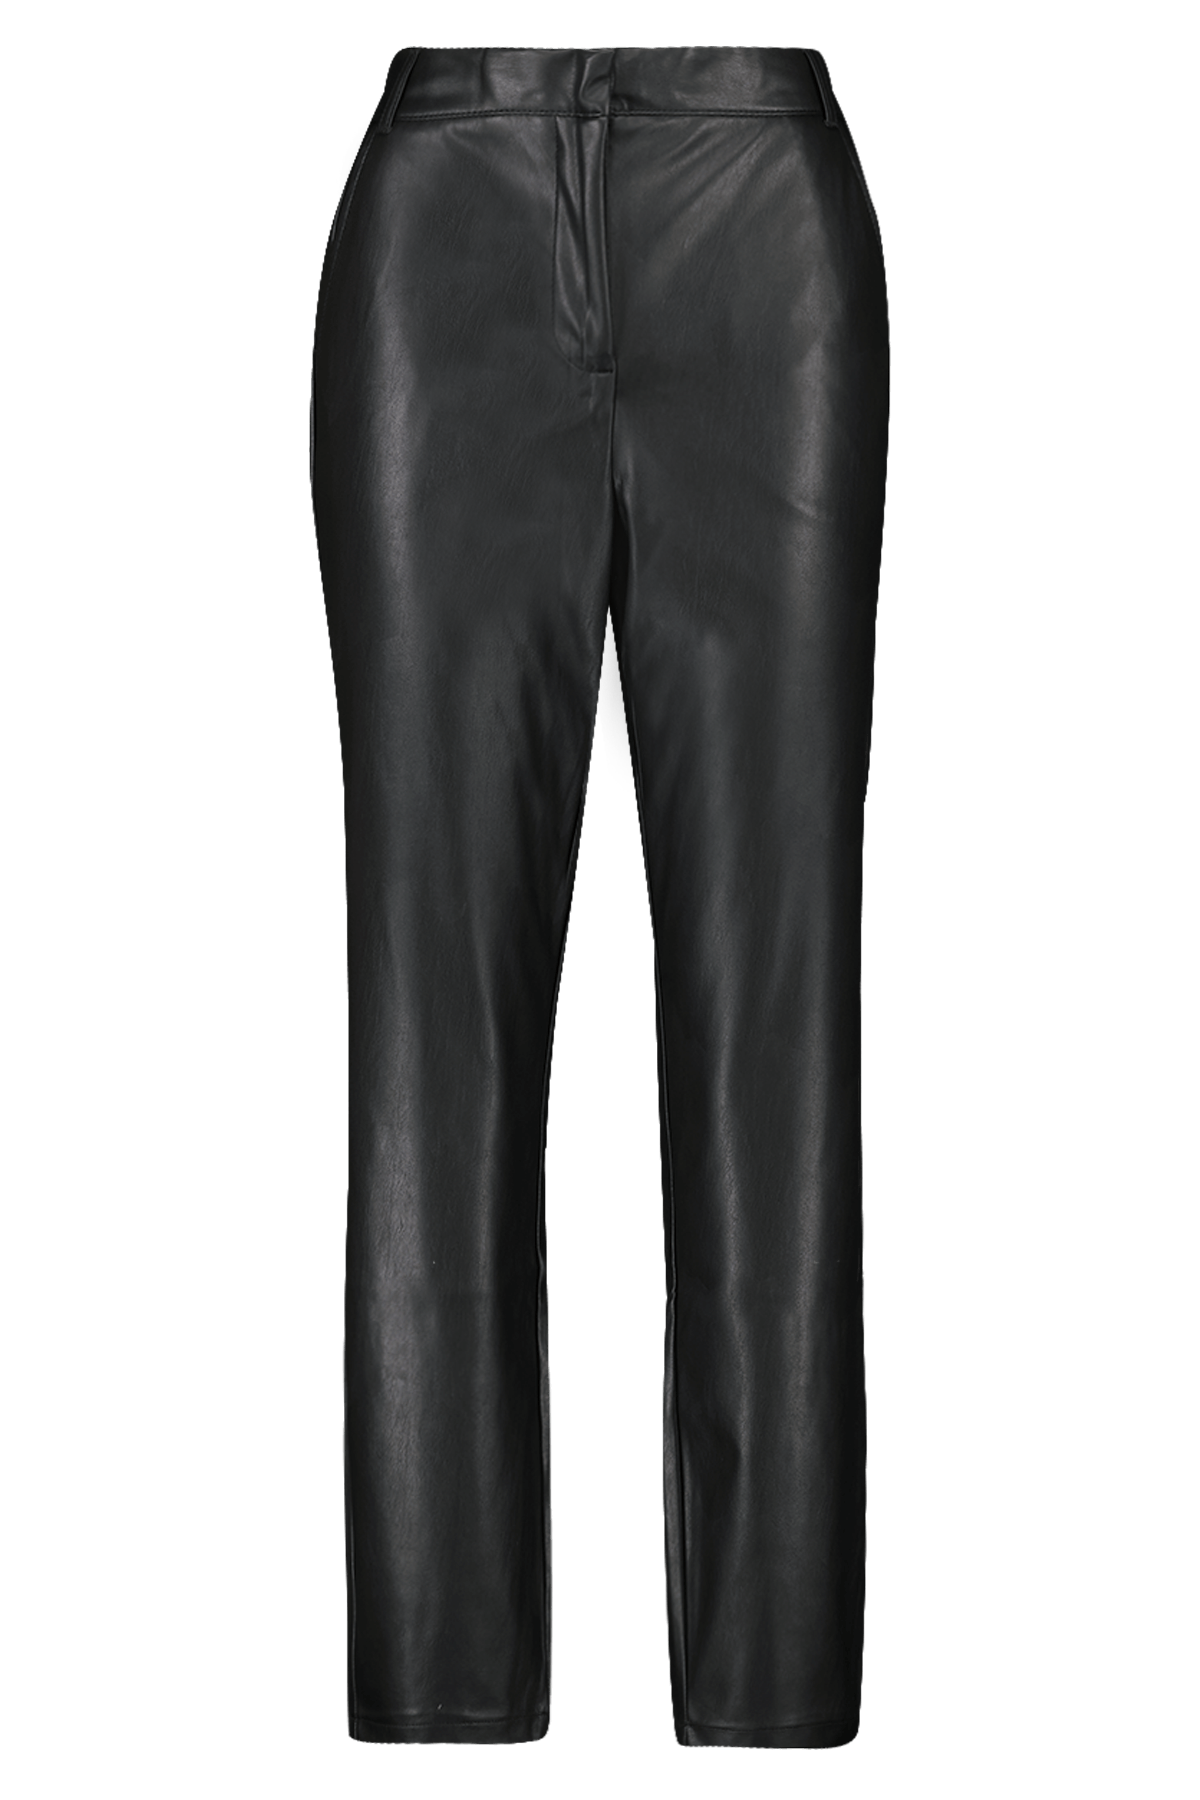 Pantalones de cuero sintético image 1